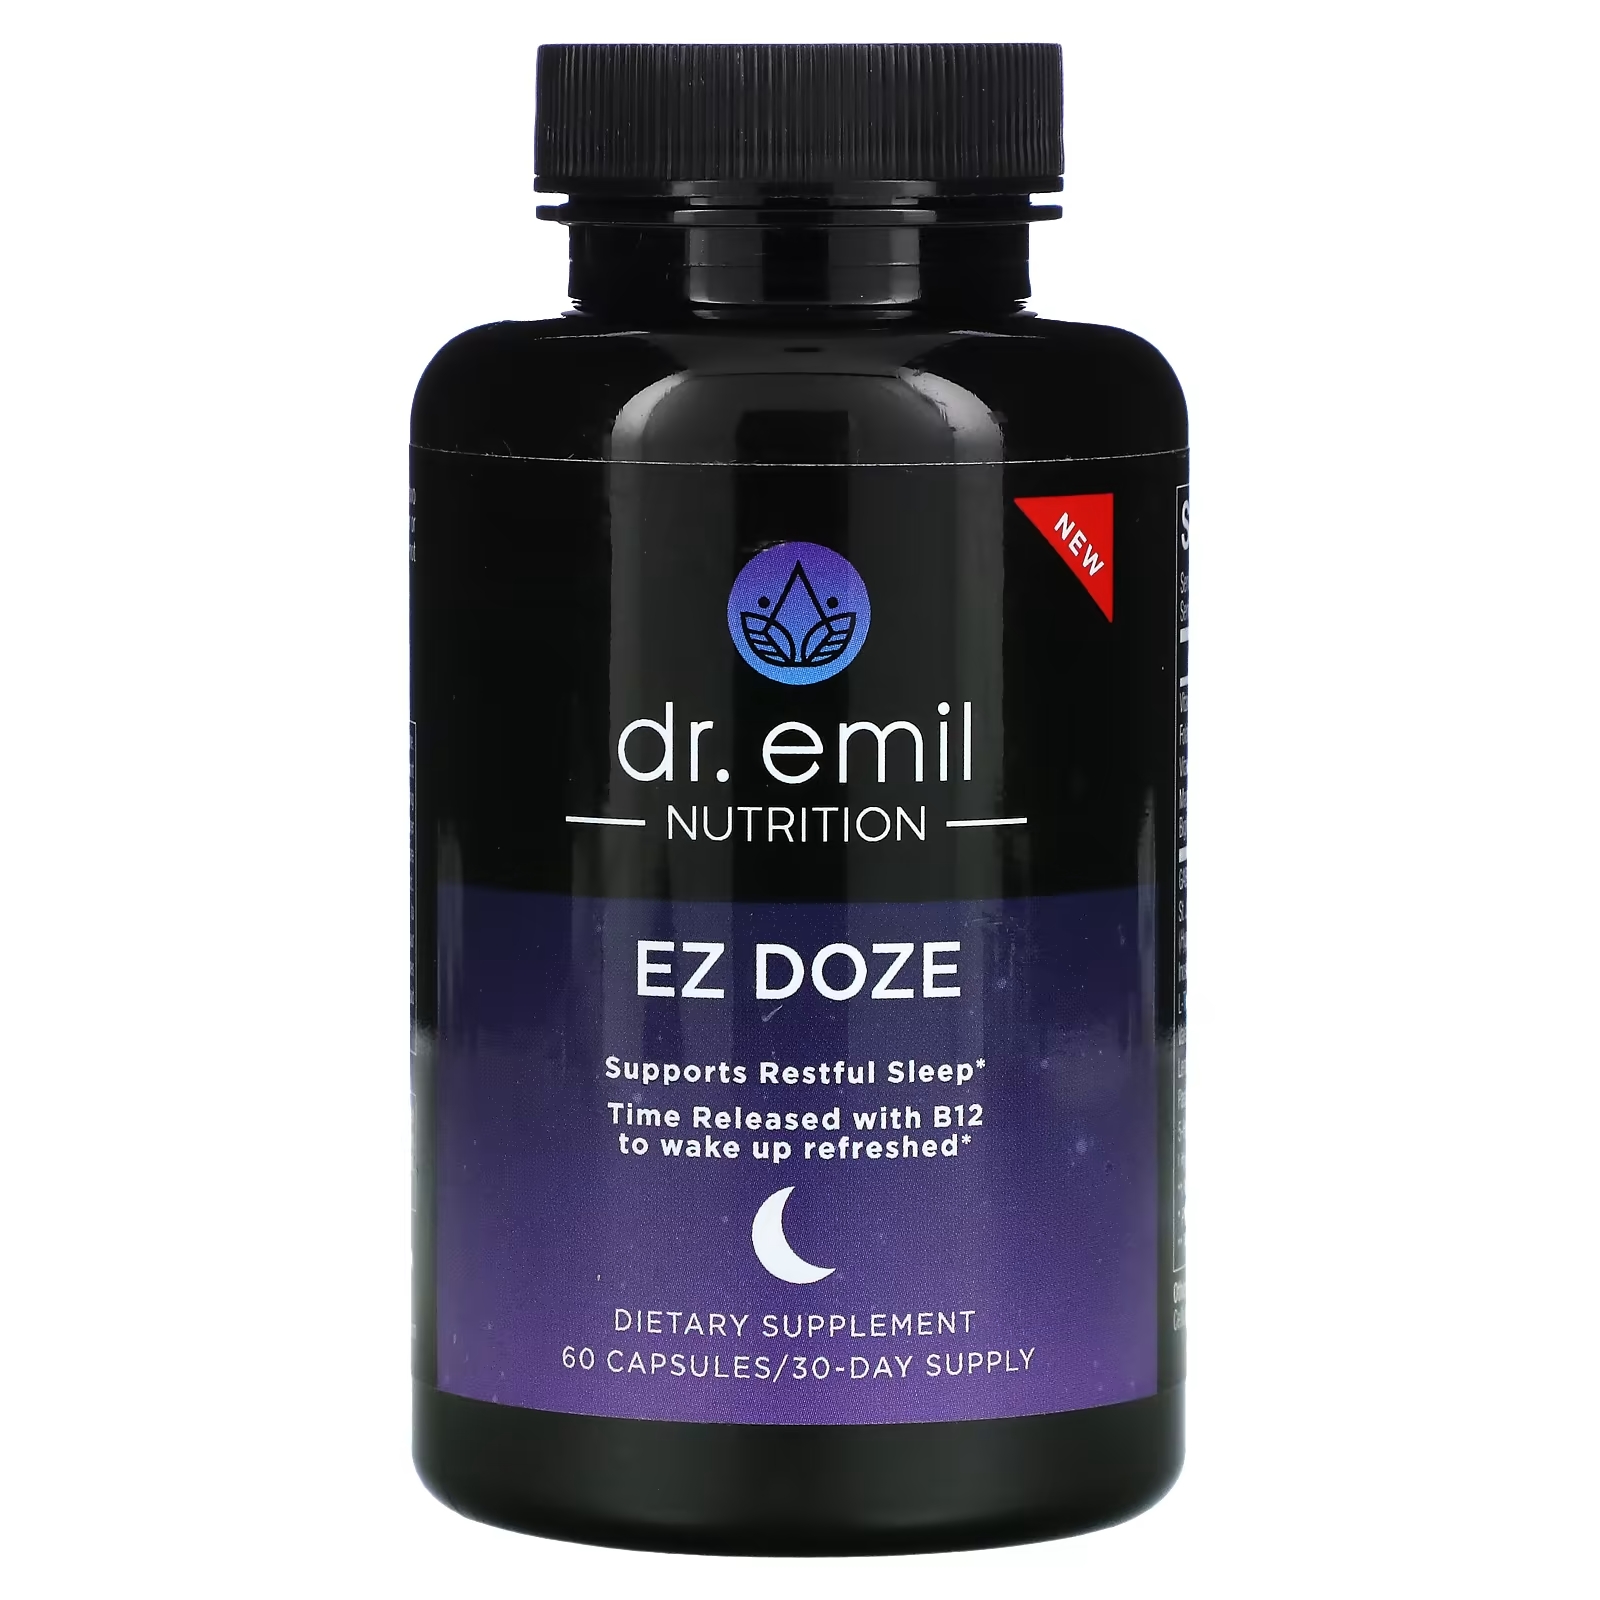 Dr Emil Nutrition EZ DOZE, 60 капсул dr emil nutrition liveraid 60 капсул